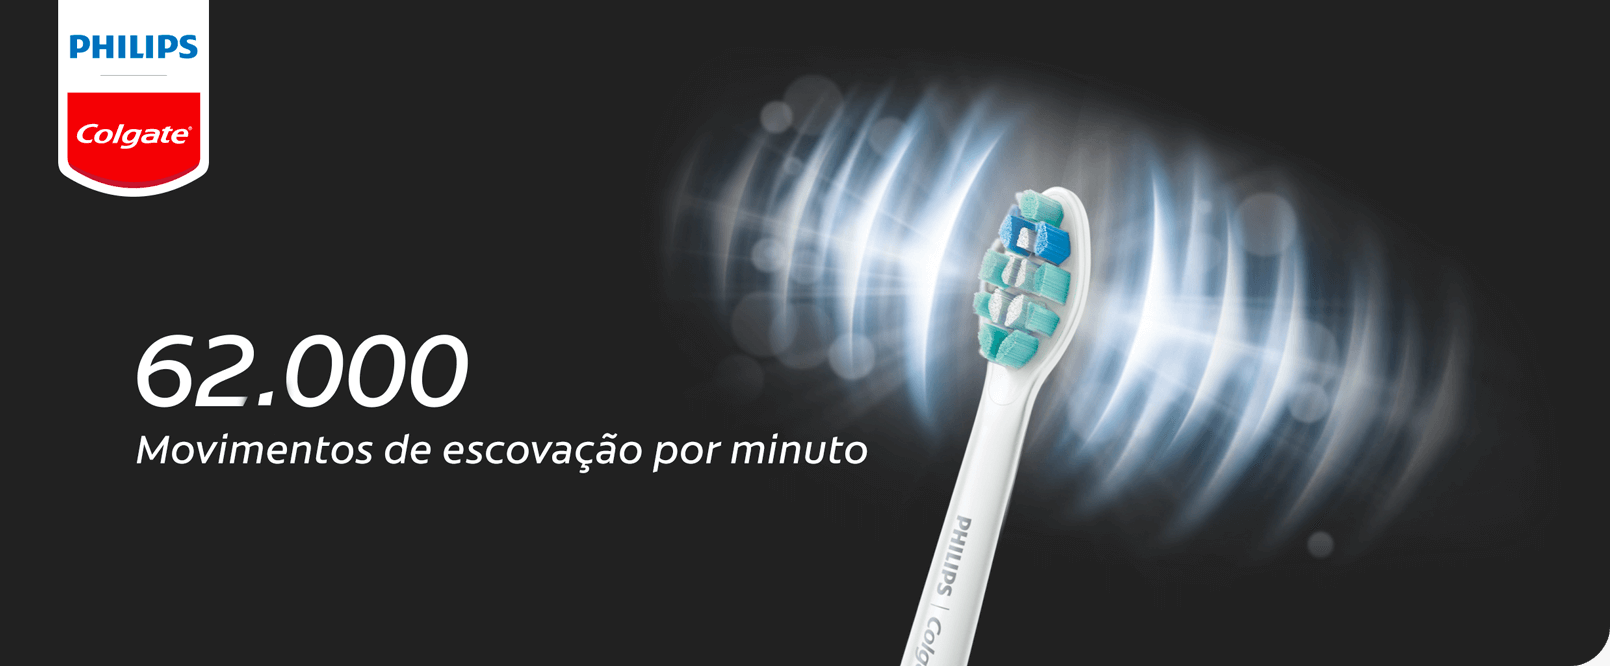 Escova elétrica Philips Colgate SonicPro com 62.000 movimentos de escovação por minuto